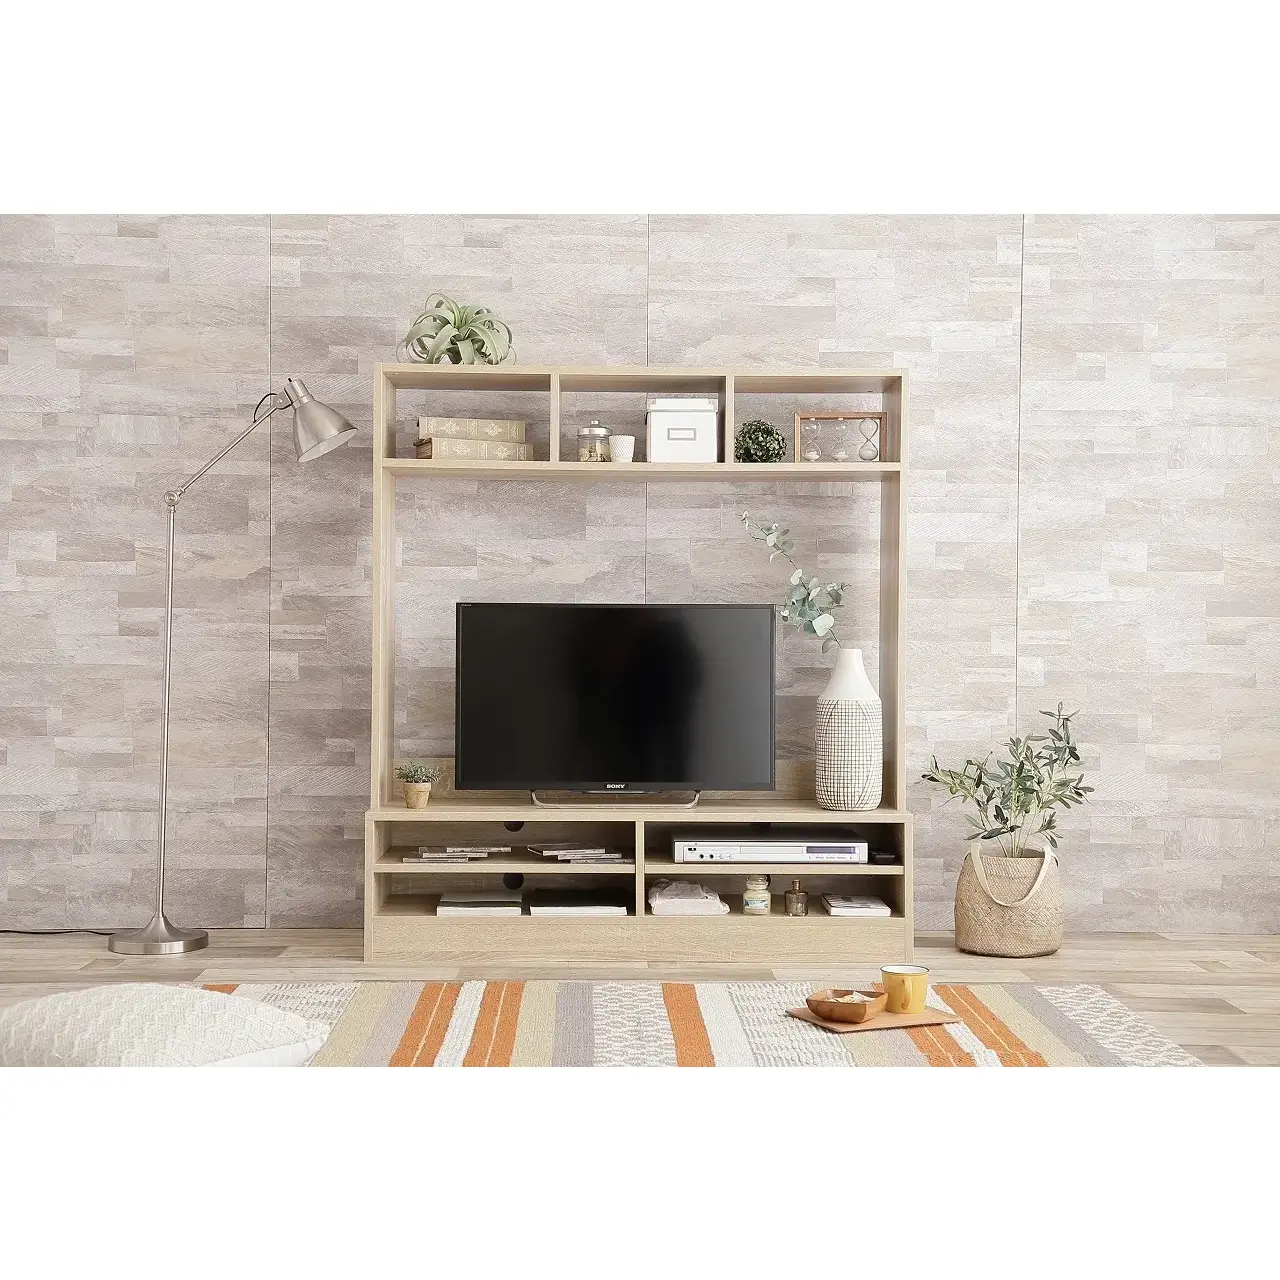 【幅120cm】 Ralme コンパクト壁面テレビボード | おしゃれな家具